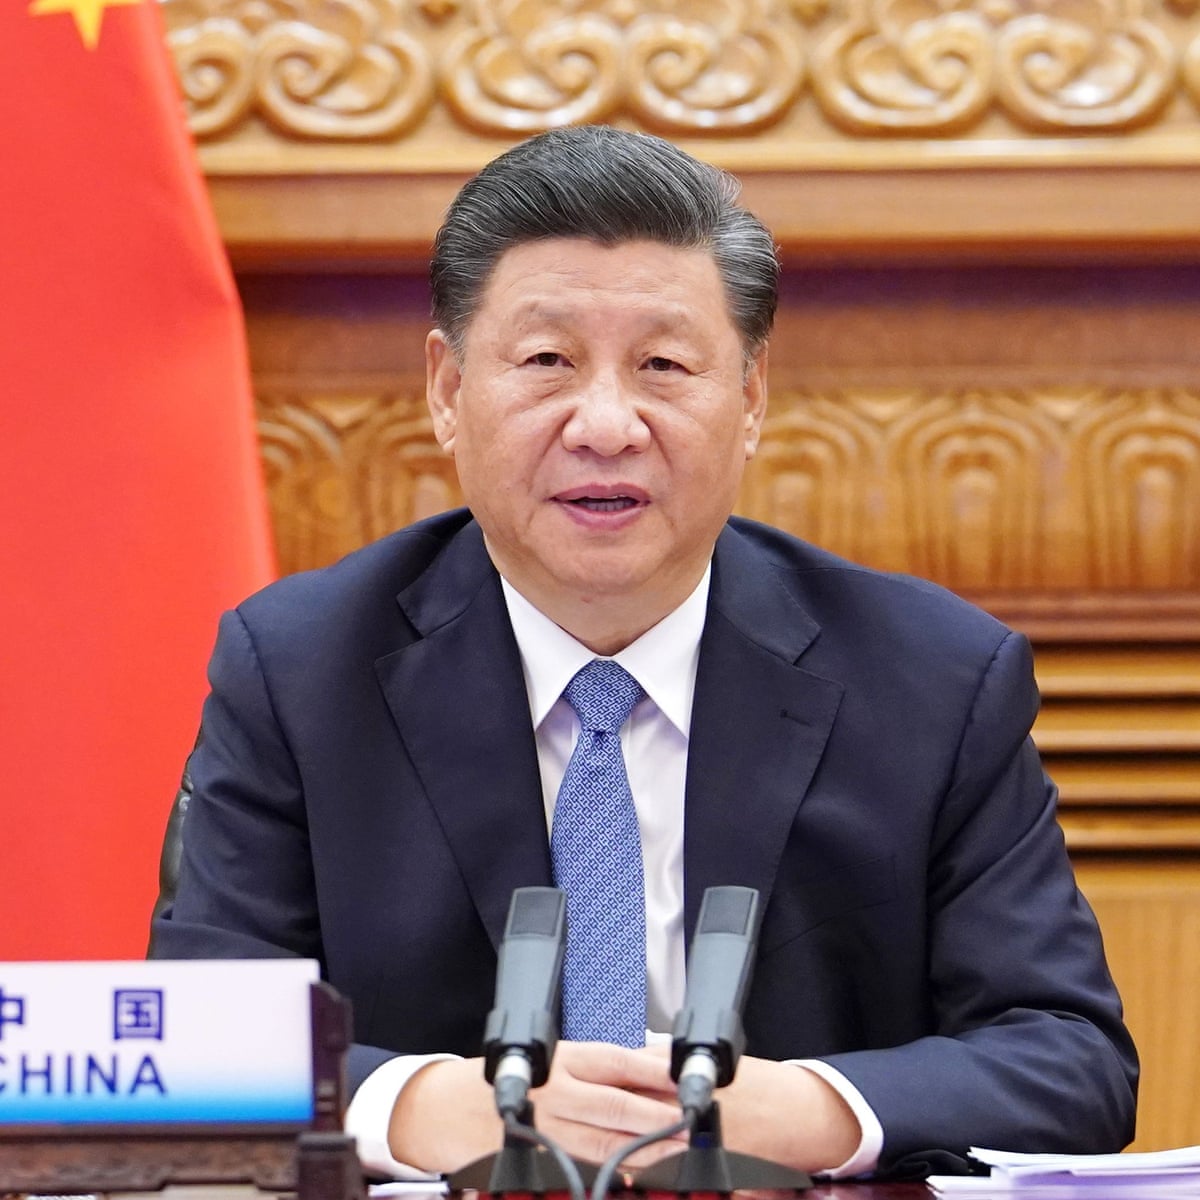 Xi Jinping Congratulates Joe Biden On Election Win China The Guardian